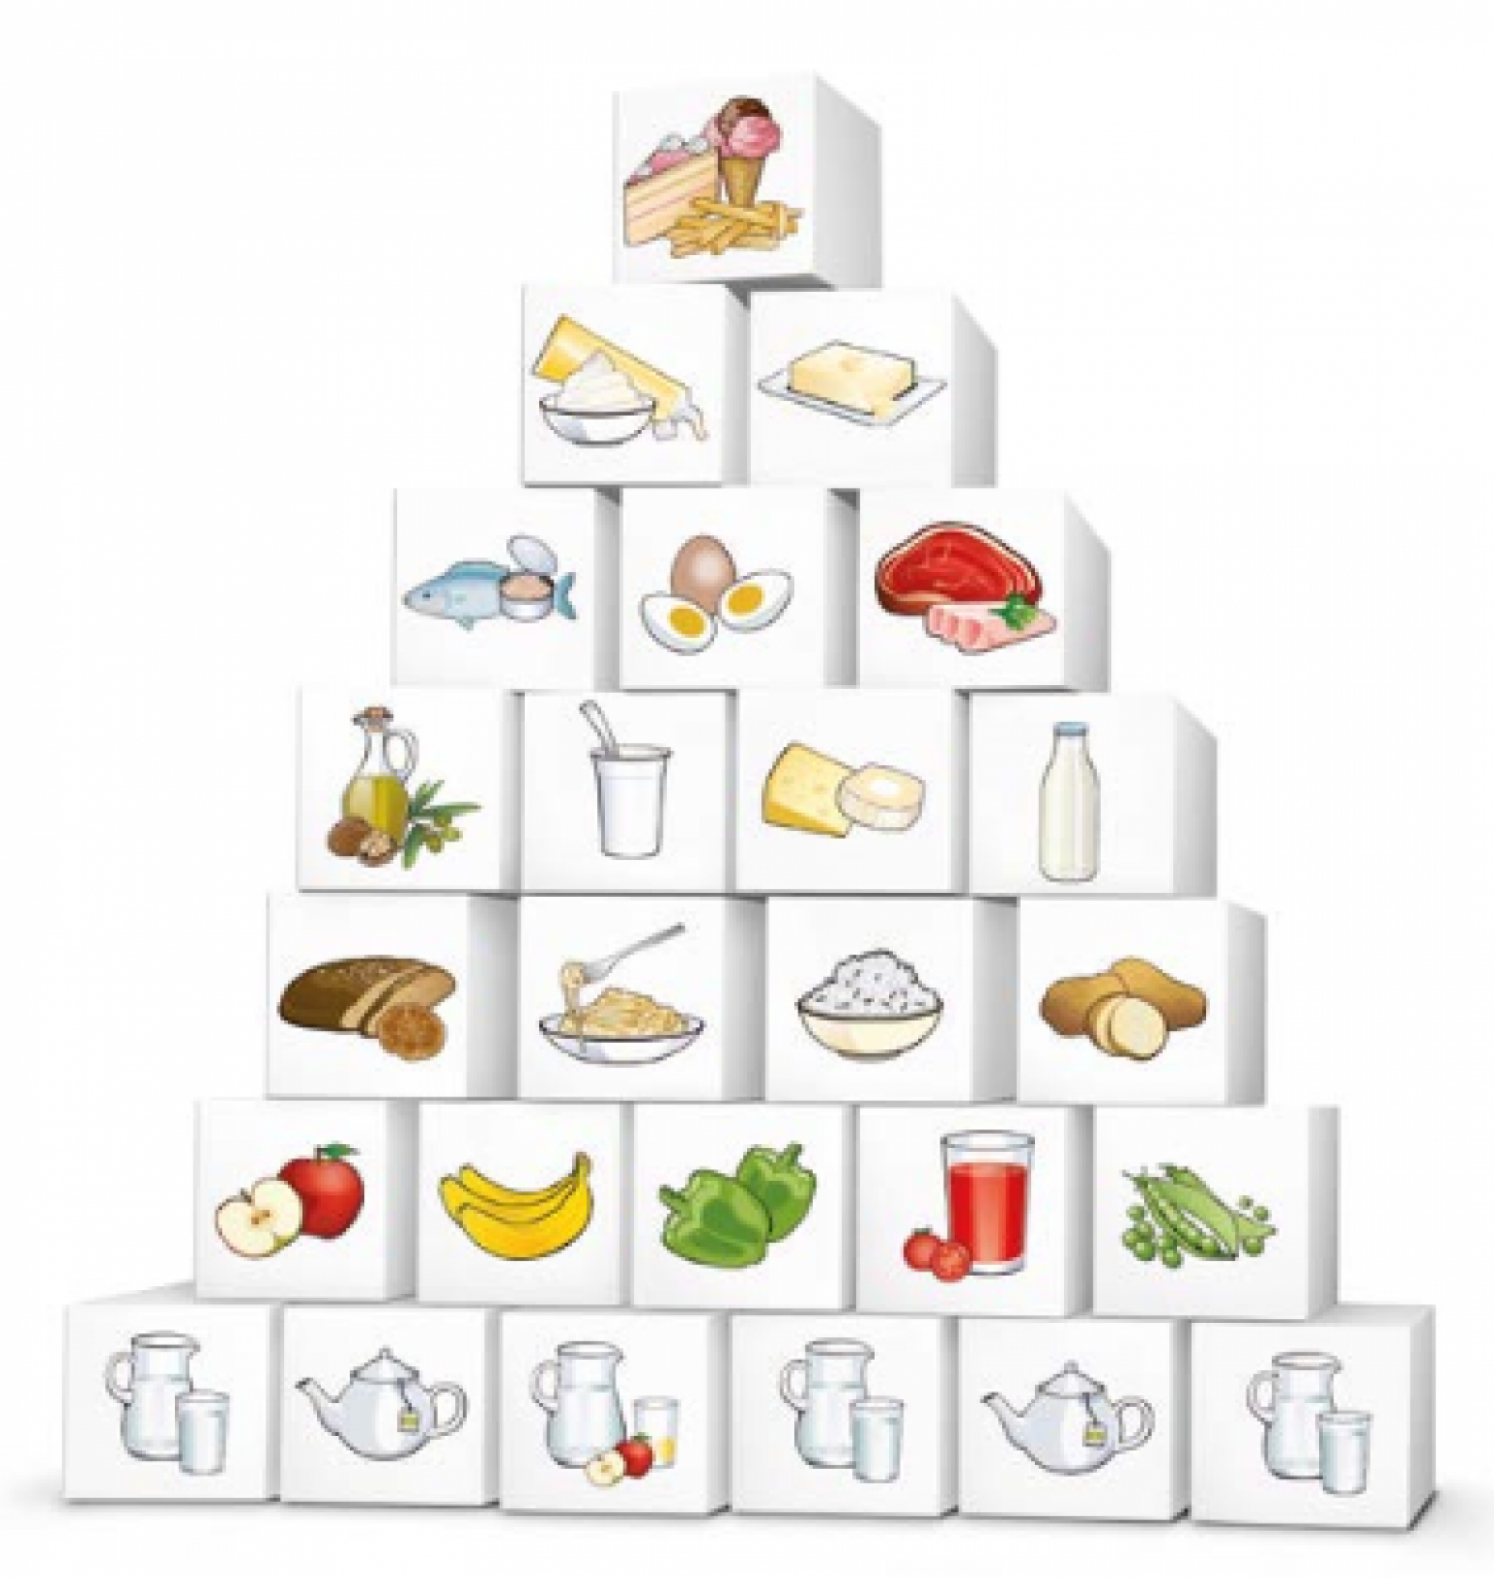 Österreichische Ernährungspyramide